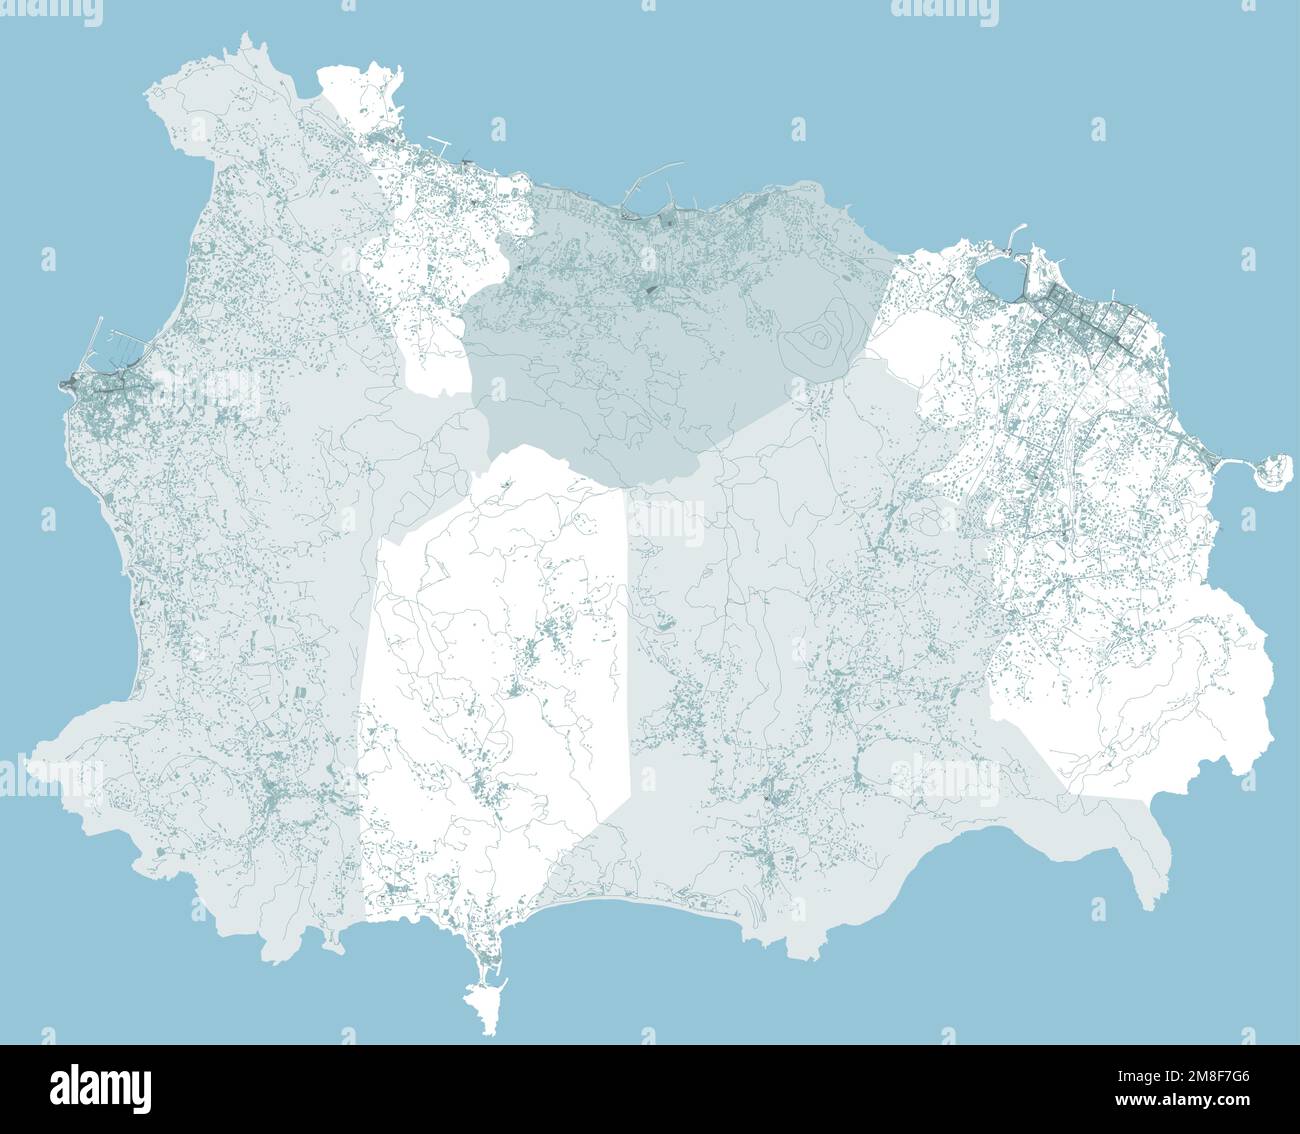 Vue satellite de l'île d'Ischia, vecteur. Bâtiments et maisons, rues. Campanie. Italie. Tremblements de terre et mouvements tectoniques Illustration de Vecteur